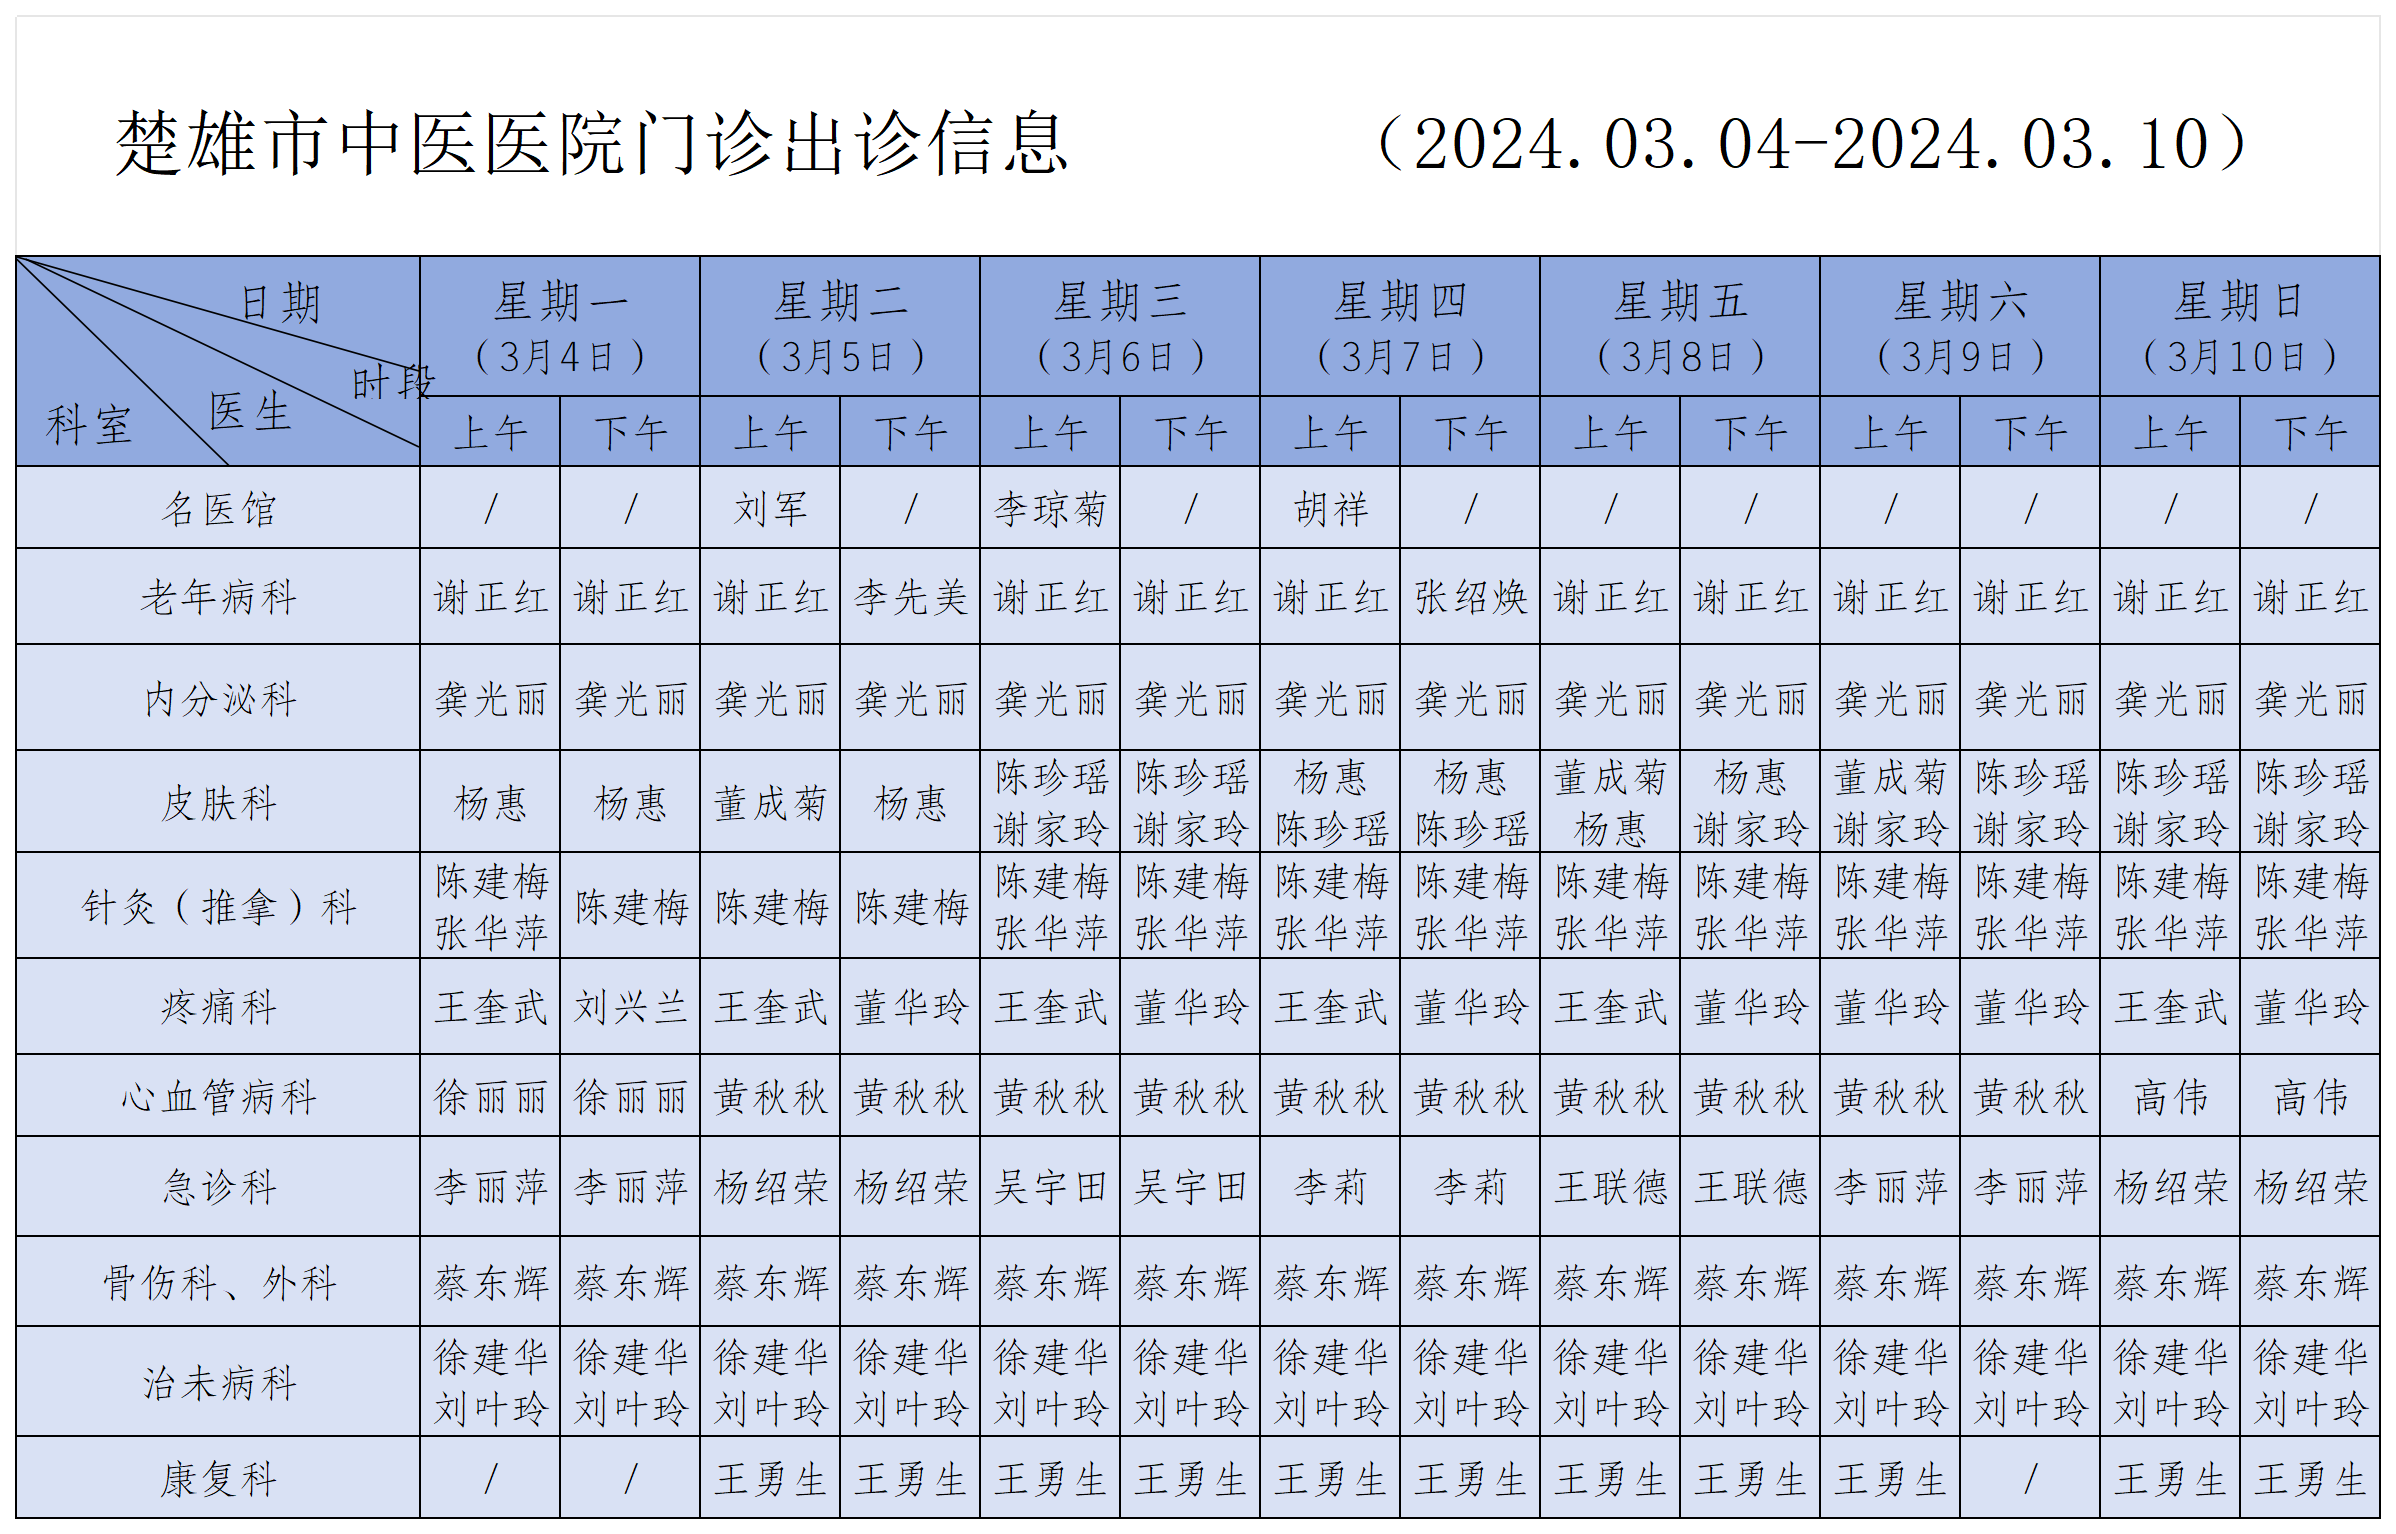 排班表模板(2024.03.04)_楚雄市中医医院门诊出诊信息（模板1）.png